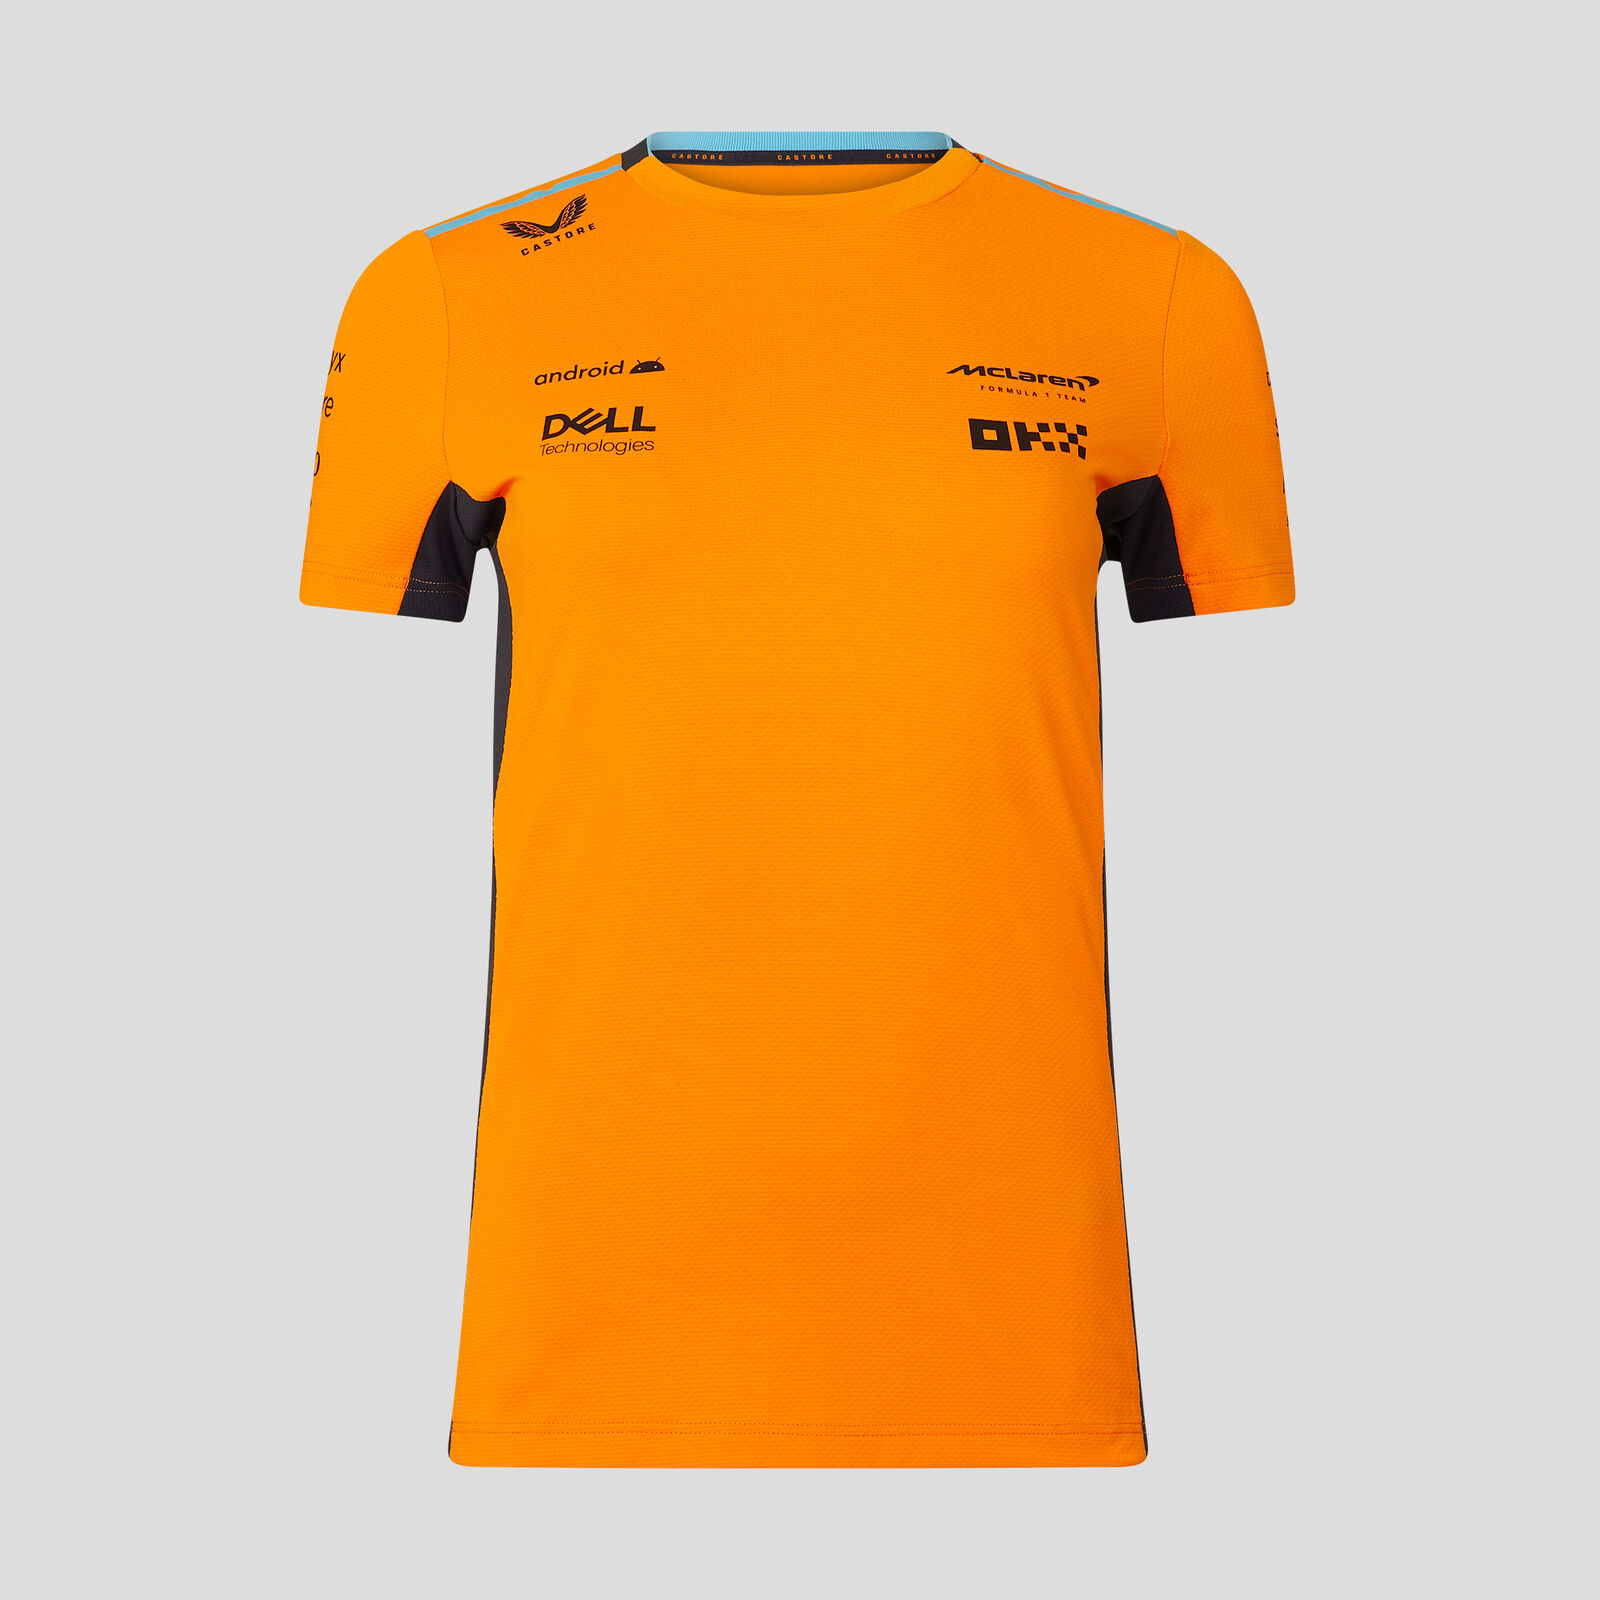 Camiseta del equipo 2023 - McLaren F1